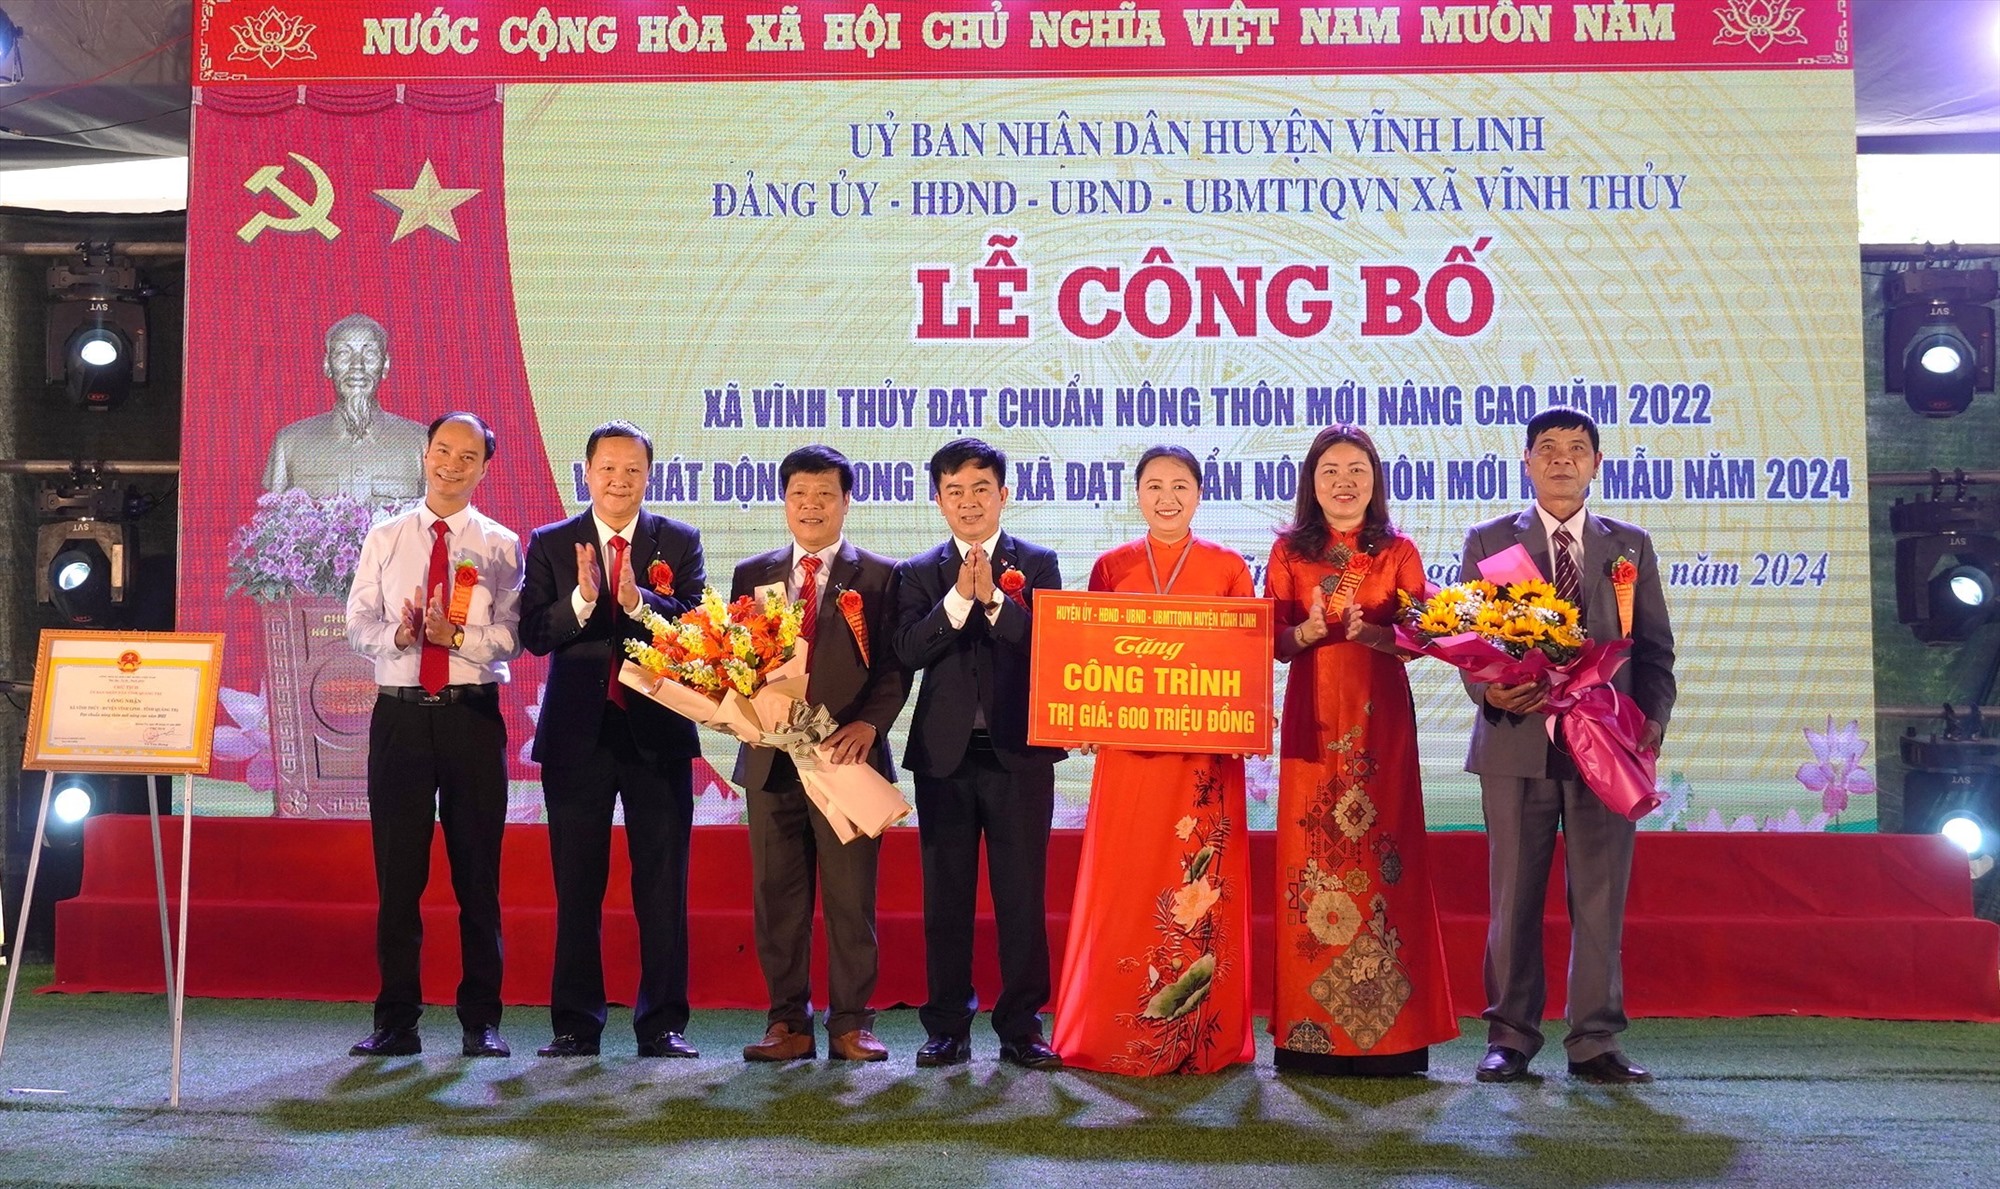 Huyện Vĩnh Linh trao tặng công trình trị giá 600 triệu đồng cho xã Vĩnh Thủy - Ảnh:TN